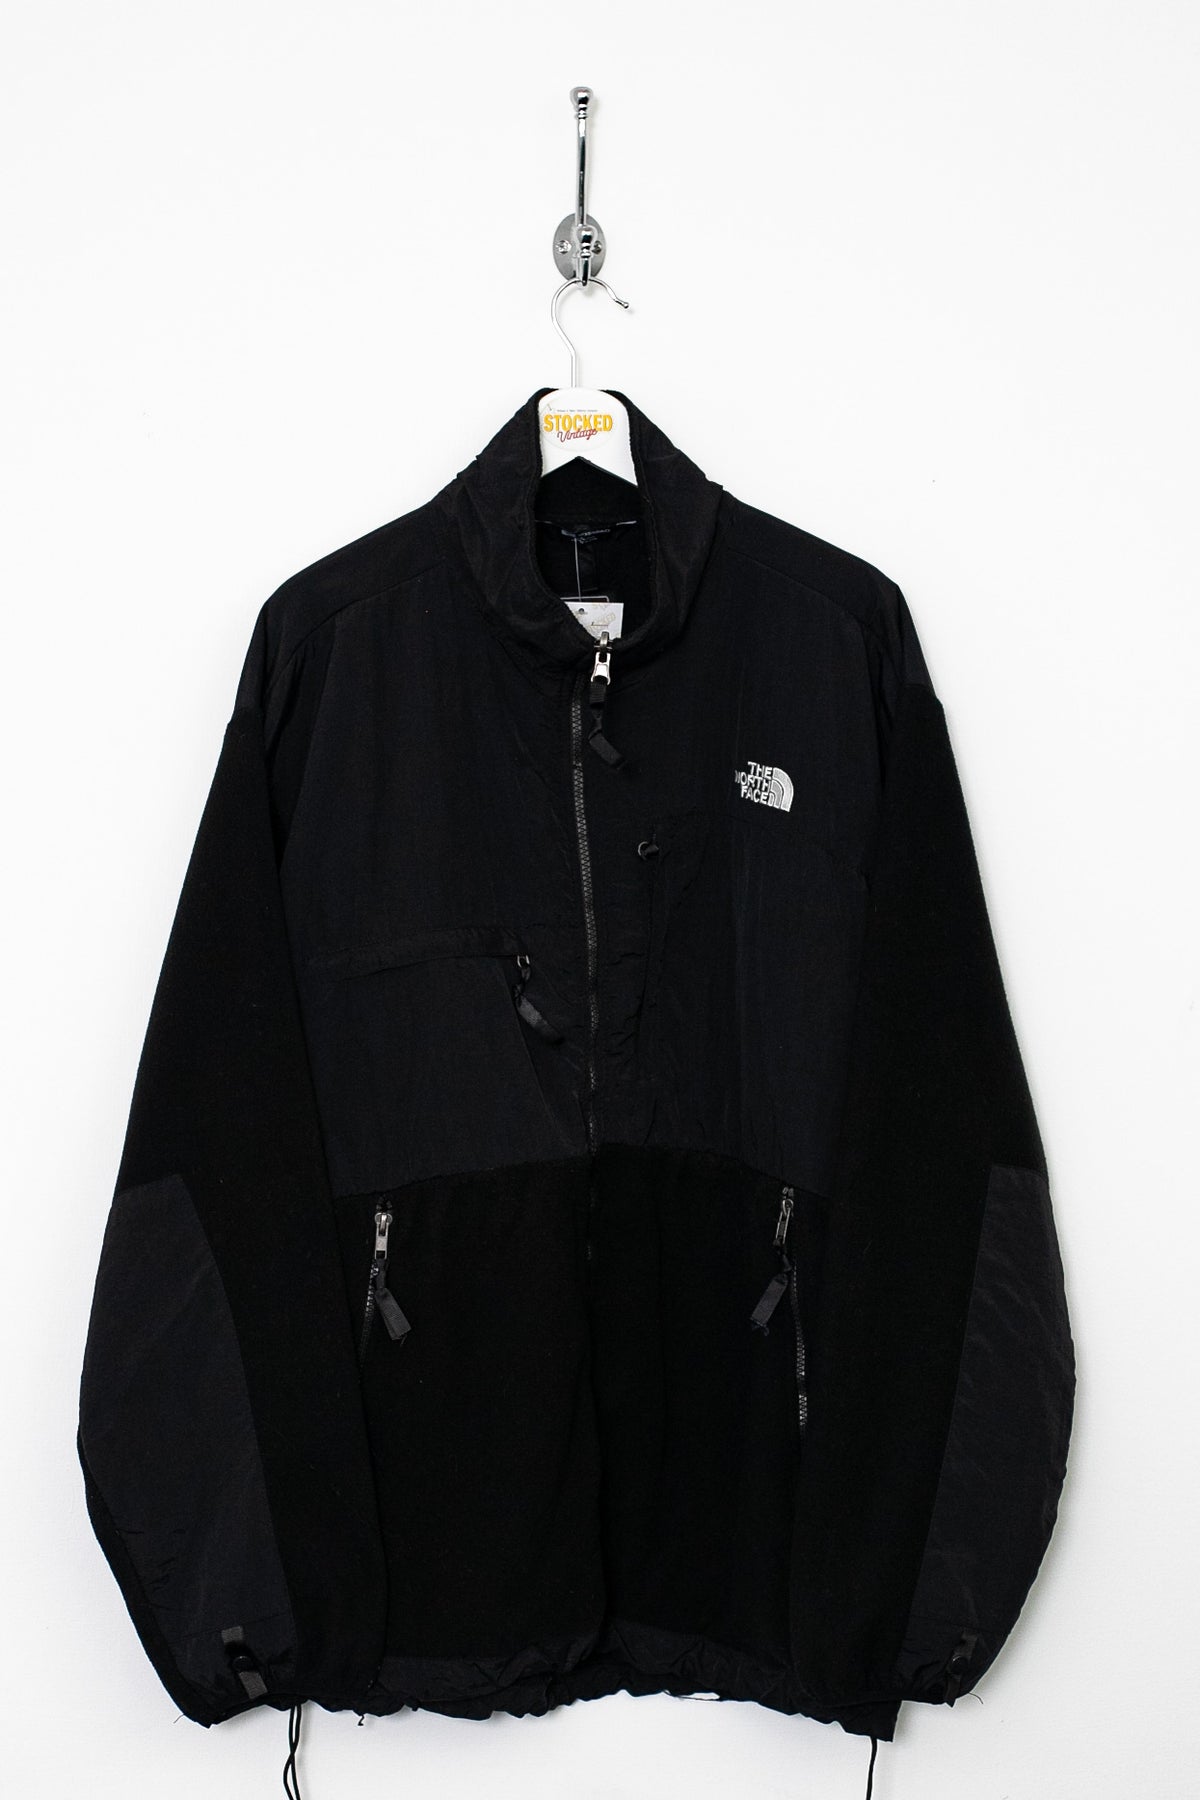 The North Face Denali Fleece Jacket (XL)